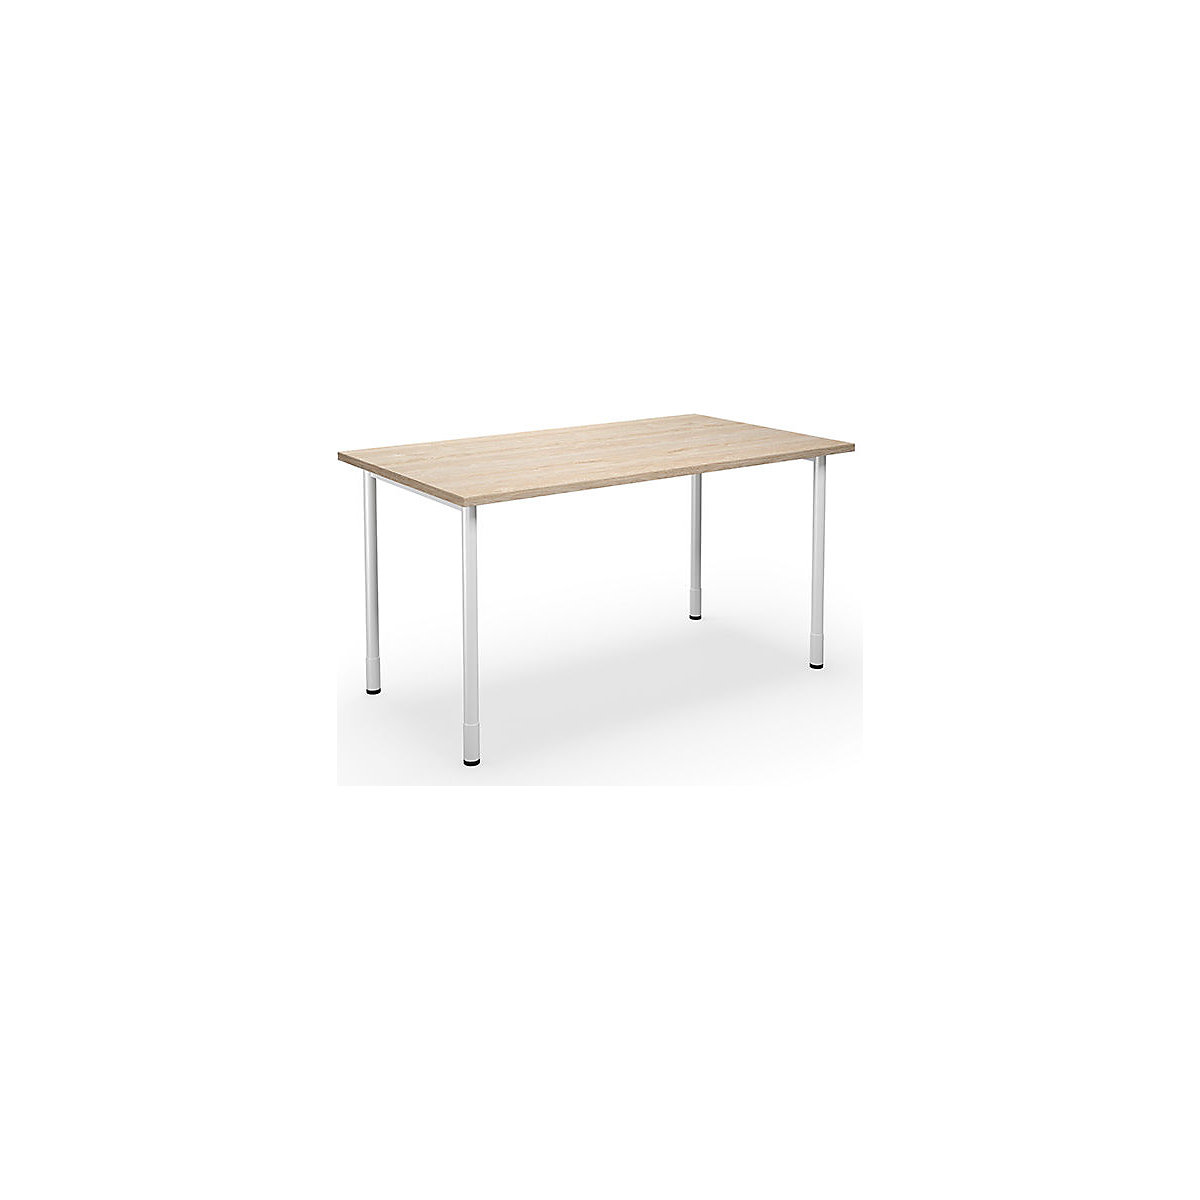 DUO-C multi-purpose desk, straight tabletop, WxD 1400 x 800 mm, oak, oak-8